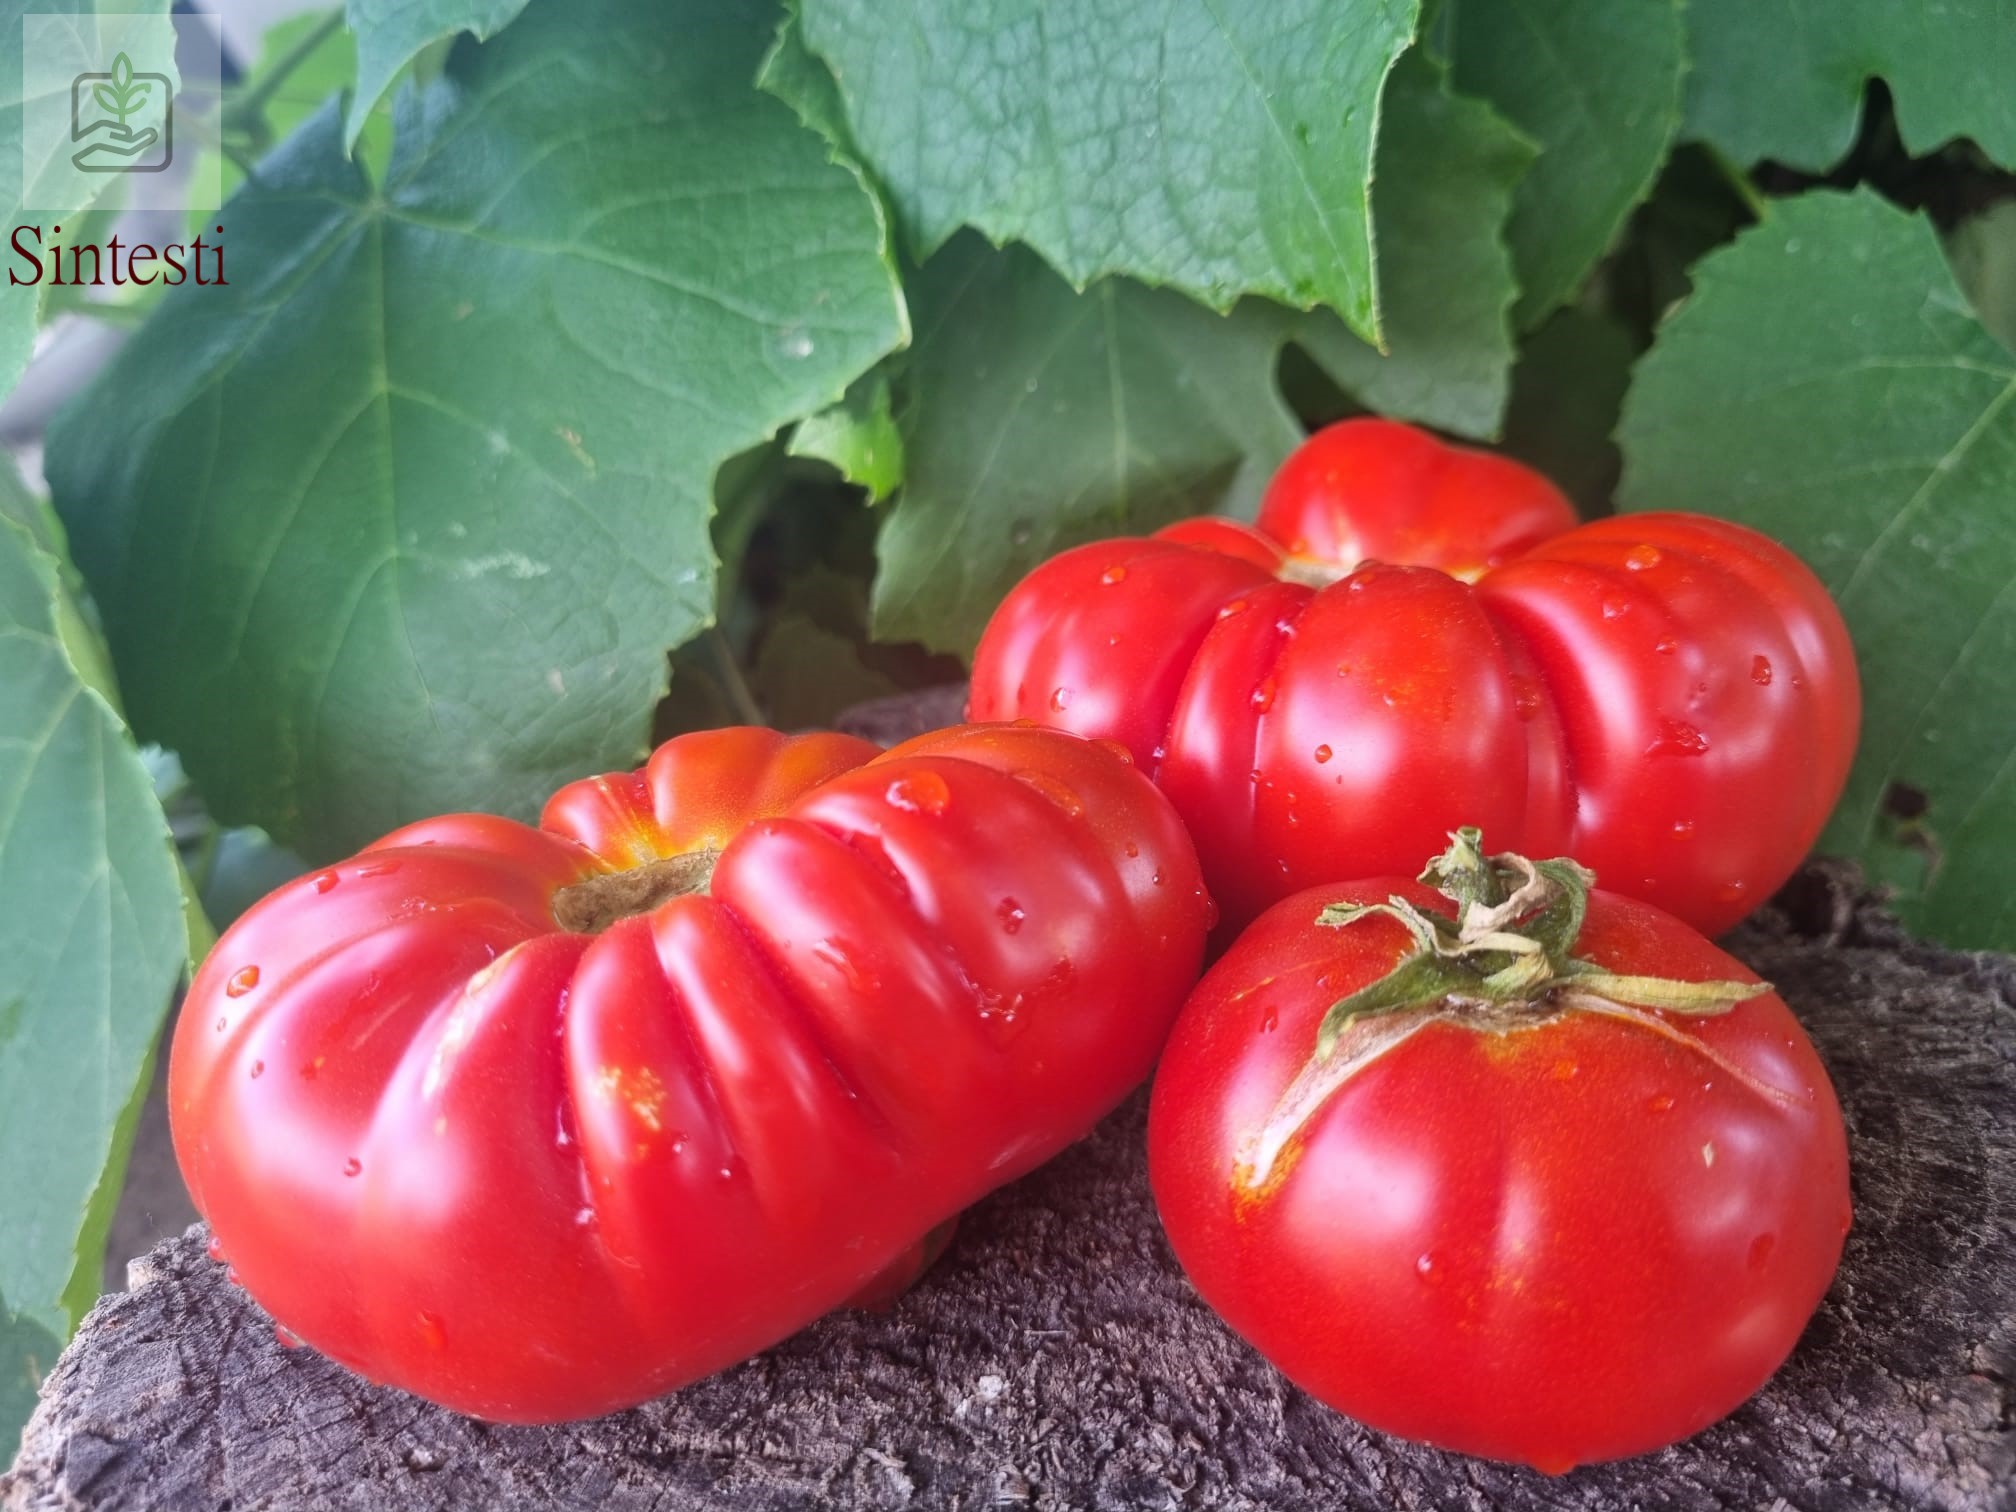 Soiul de tomate cultivat local în zona Vidra-Sintesti pare a fi o alegere excelentă pentru grădinarii din această regiune.